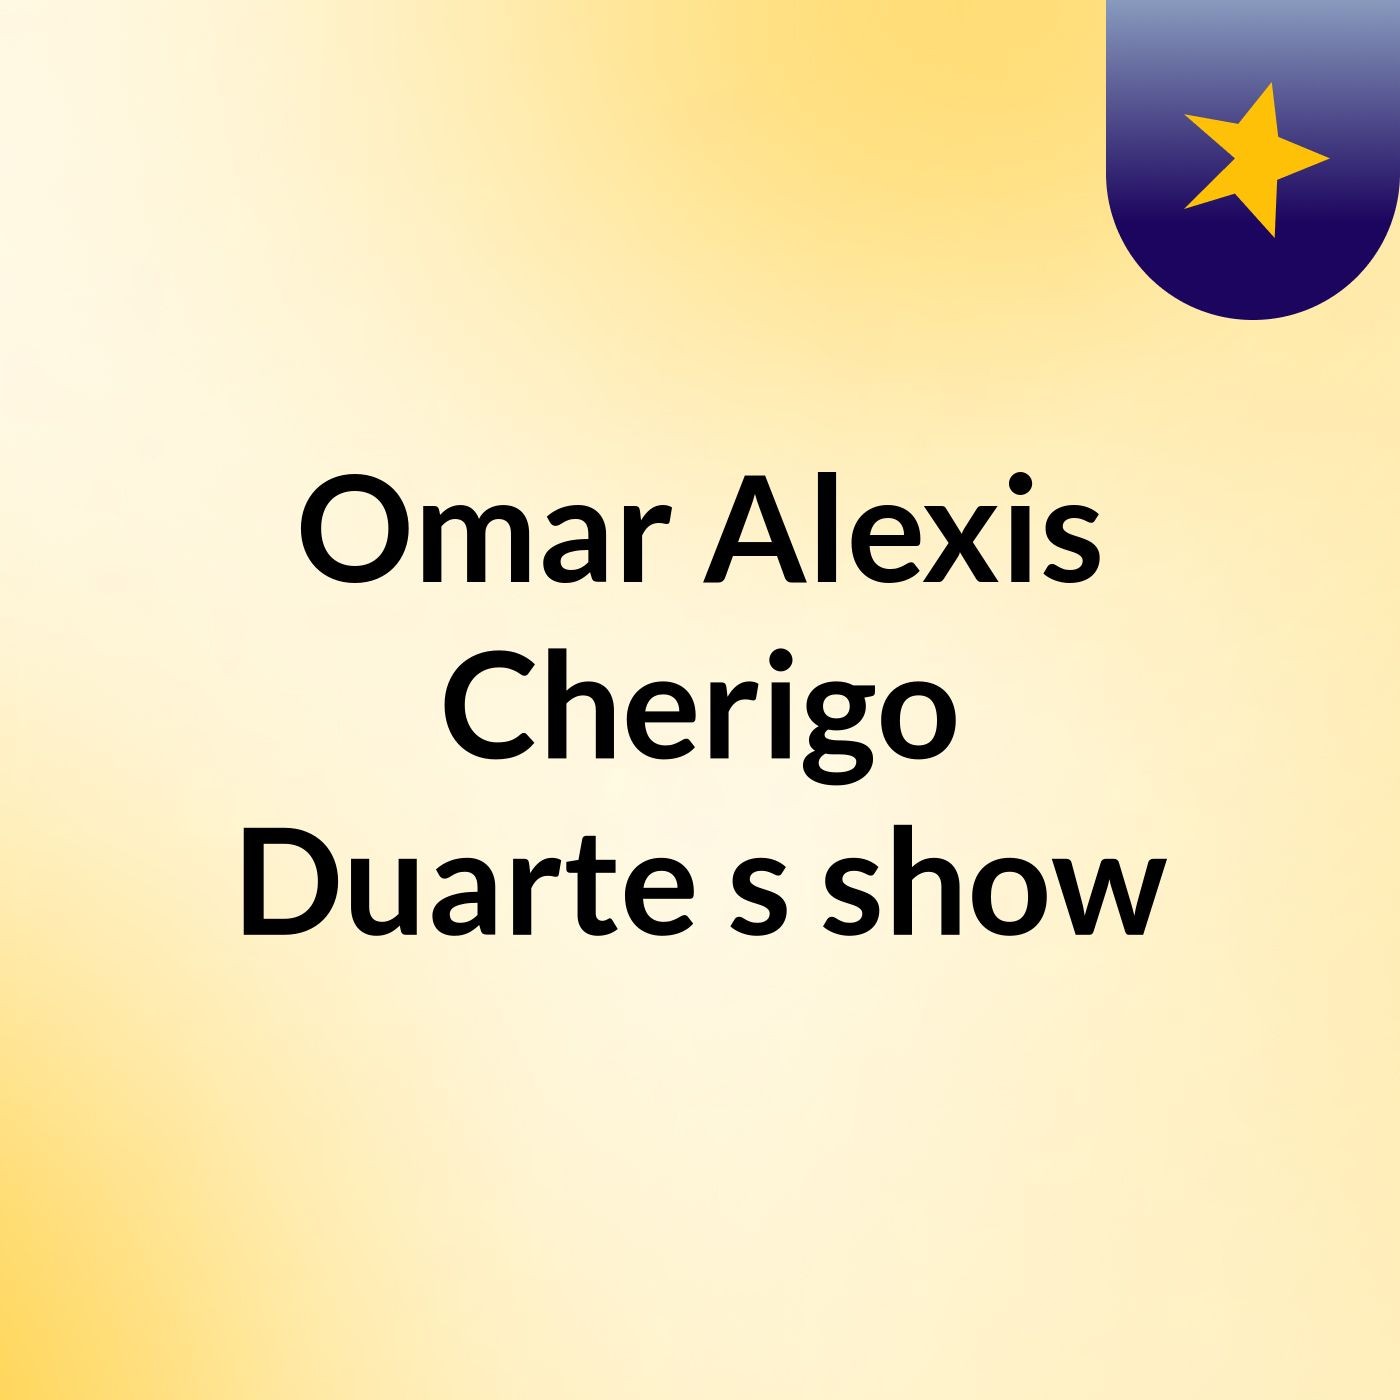 Omar Alexis Cherigo Duarte's show